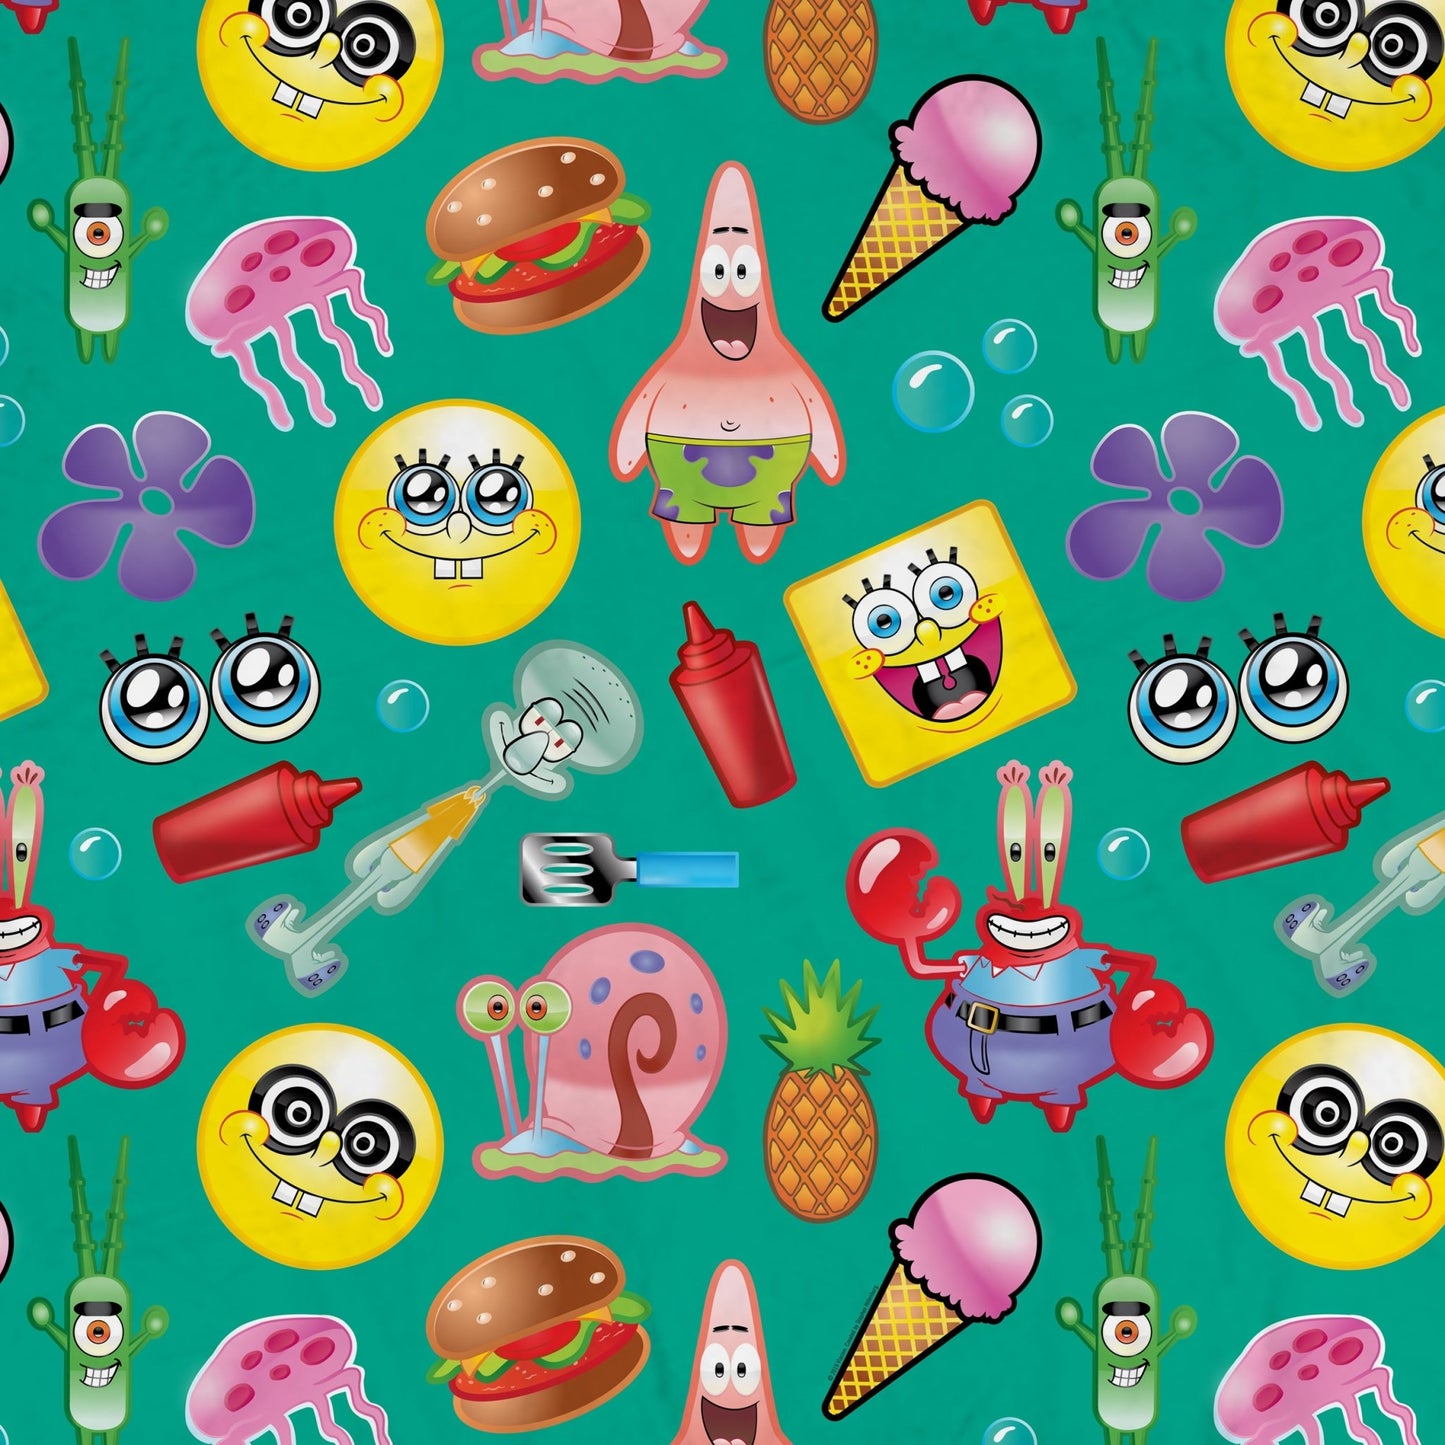 SpongeBob SquarePants Emojis Sherpa Blanket - Paramount Shop